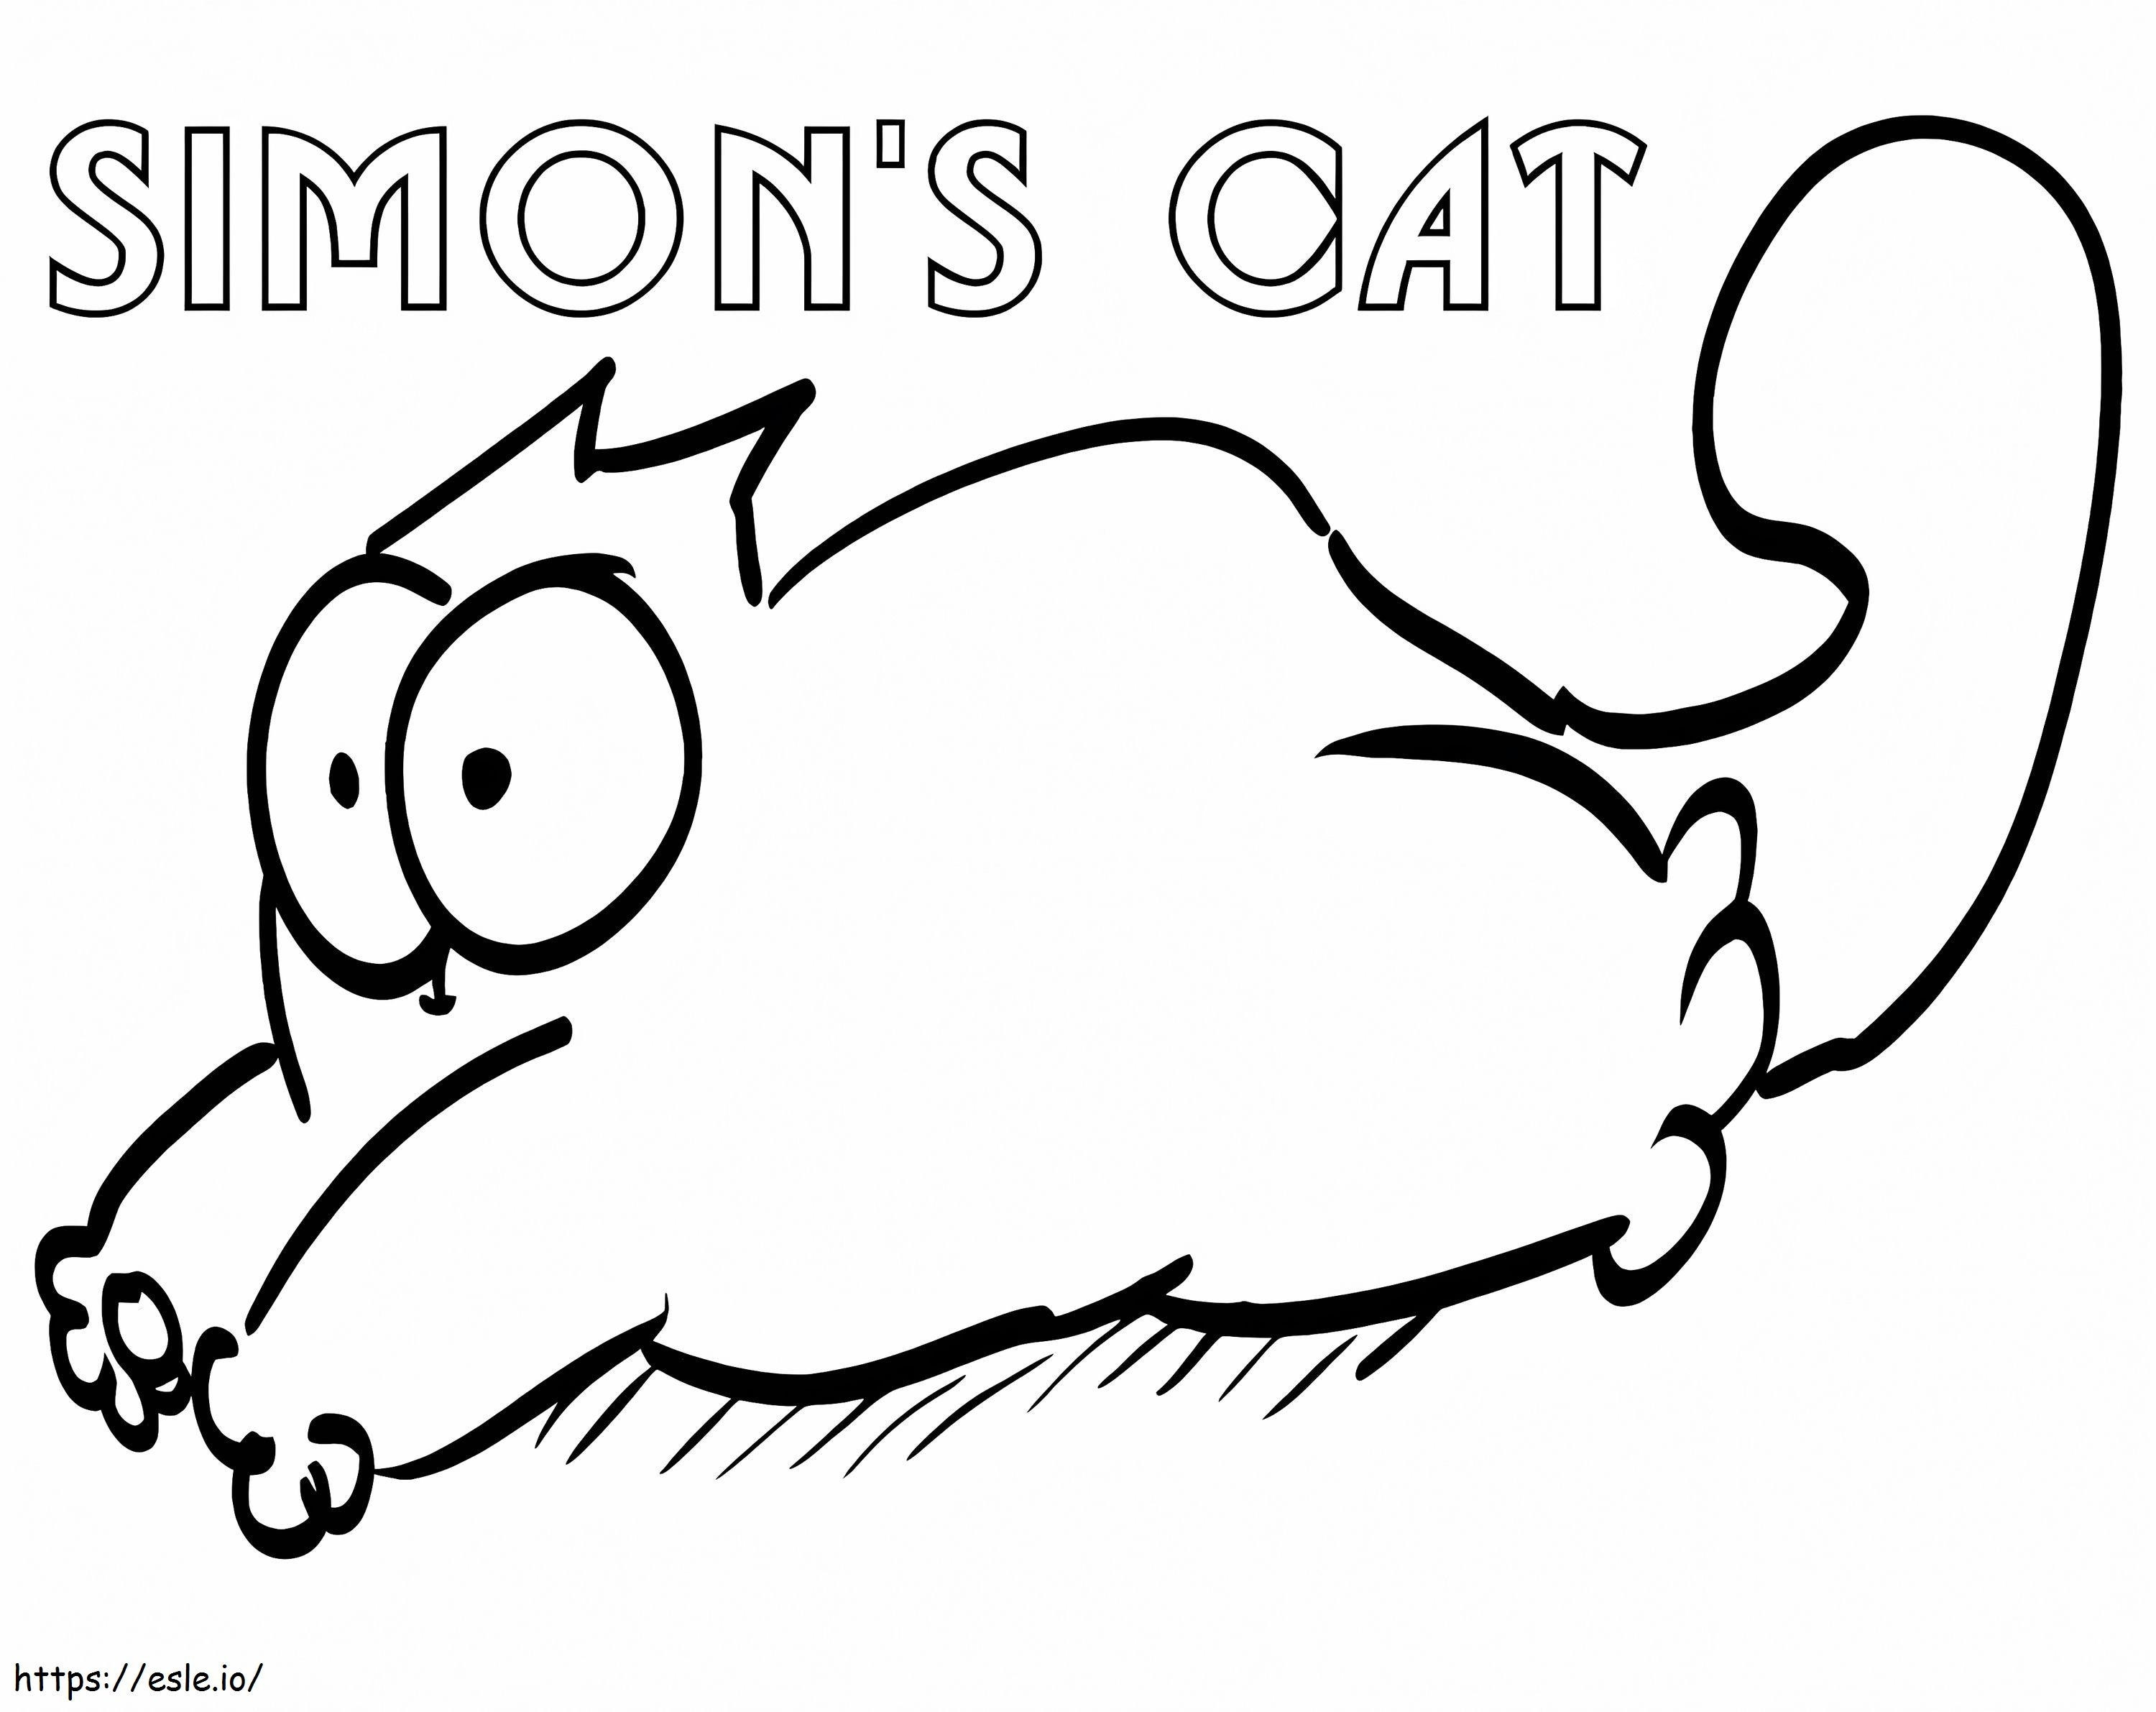 Simons gato 2 para colorear